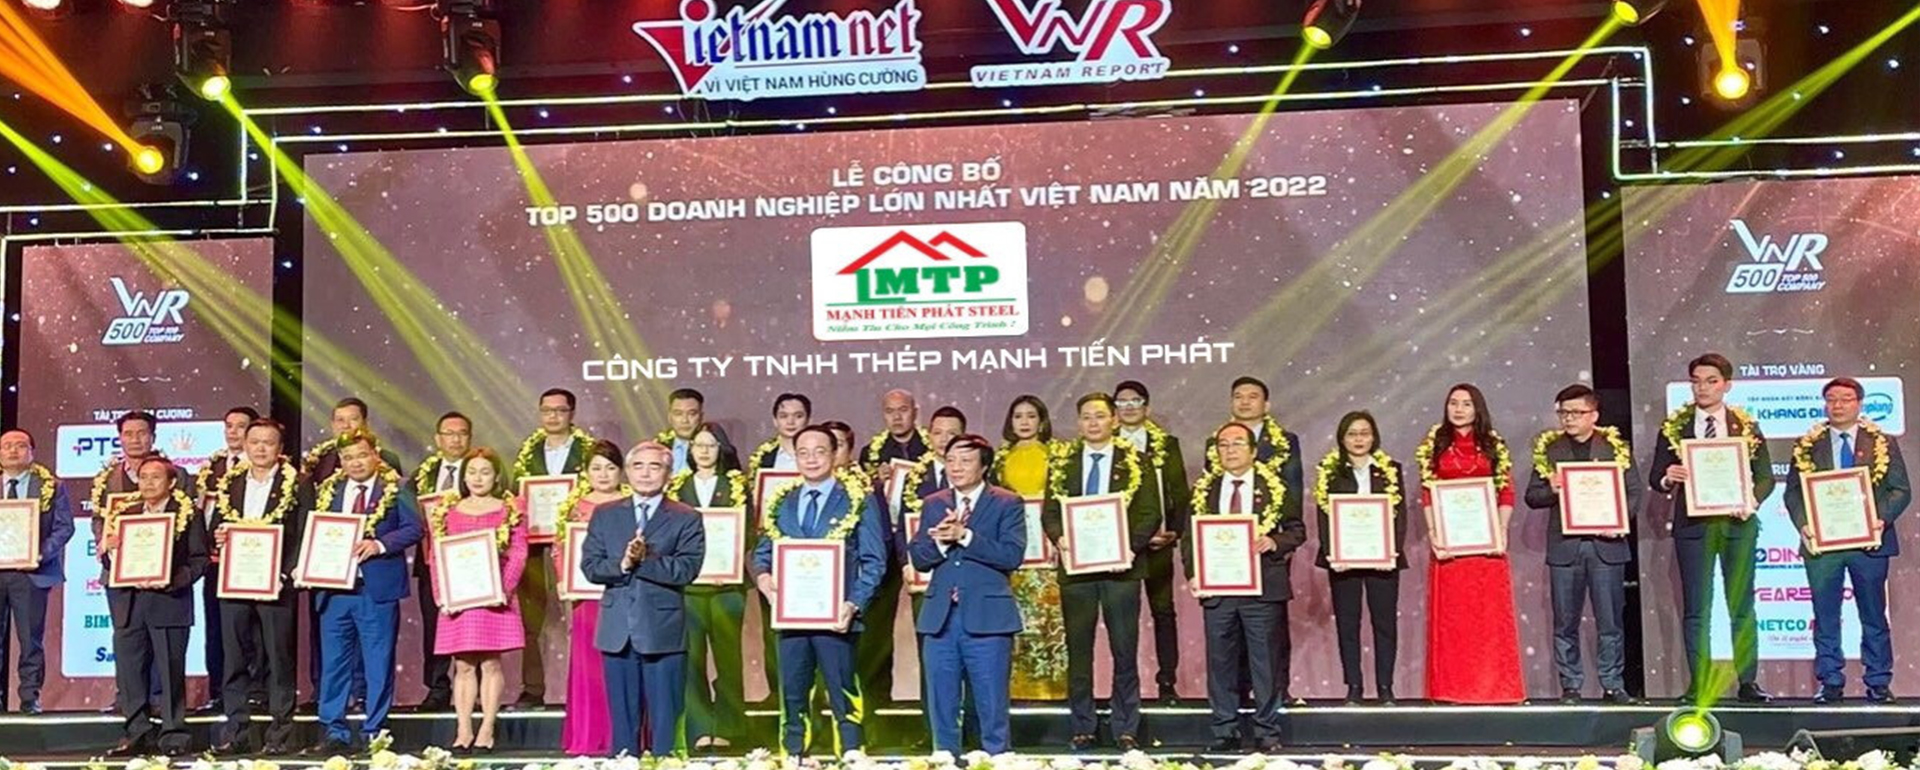 Thép Mạnh Tiến Phát đạt top 500 doanh nghiệp lớn nhất Việt Nam năm 2022